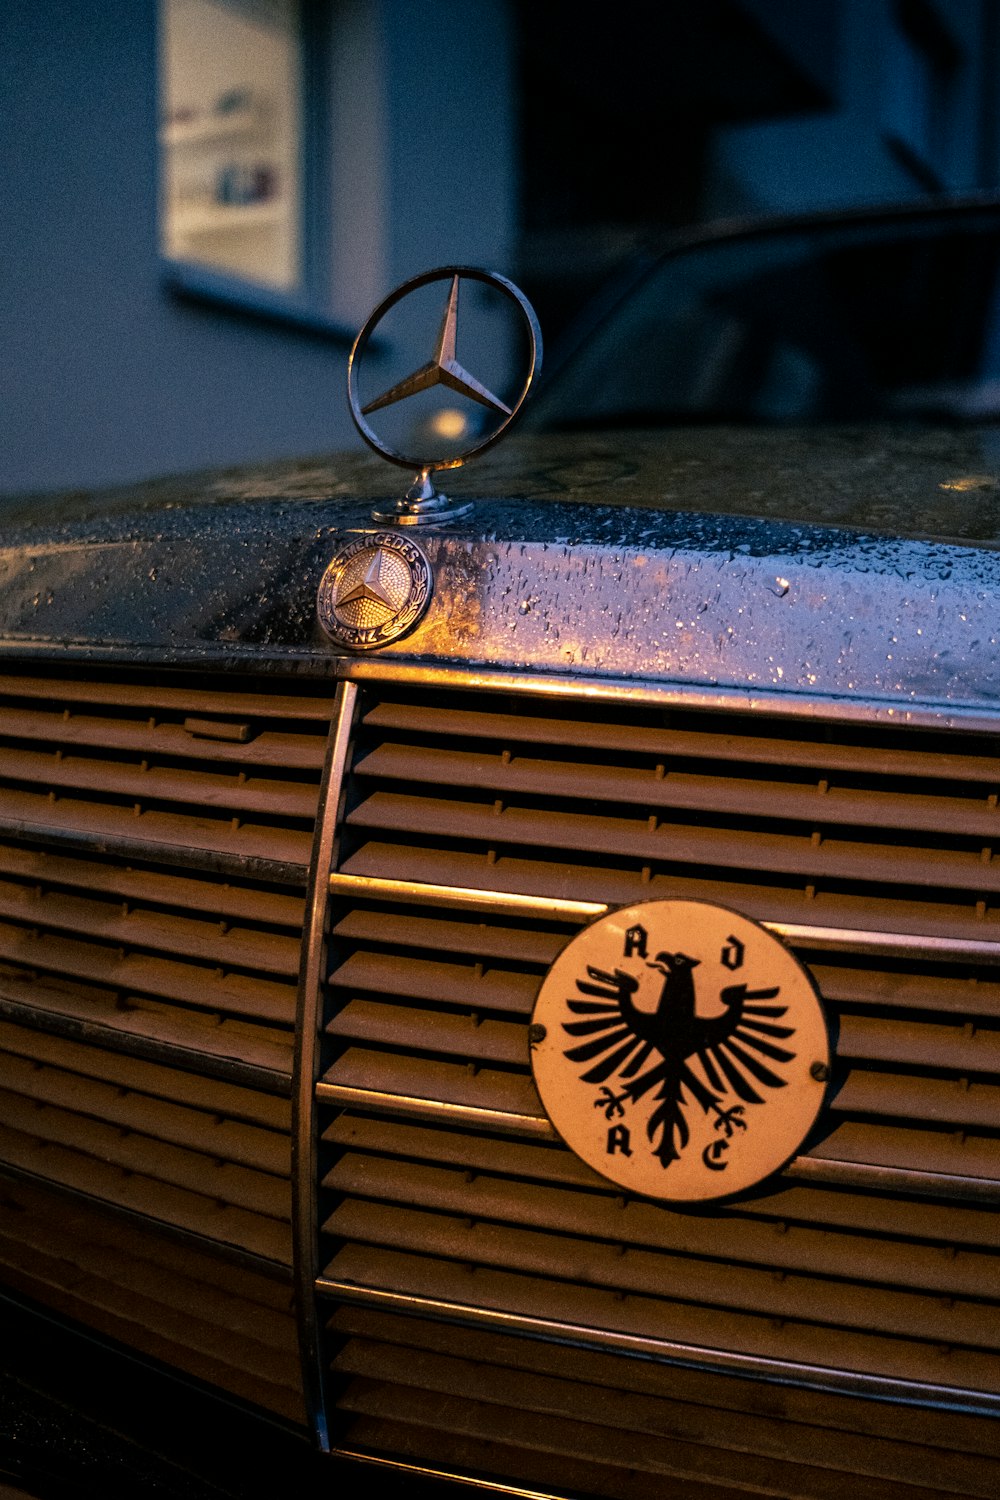 um close up do emblema em um carro